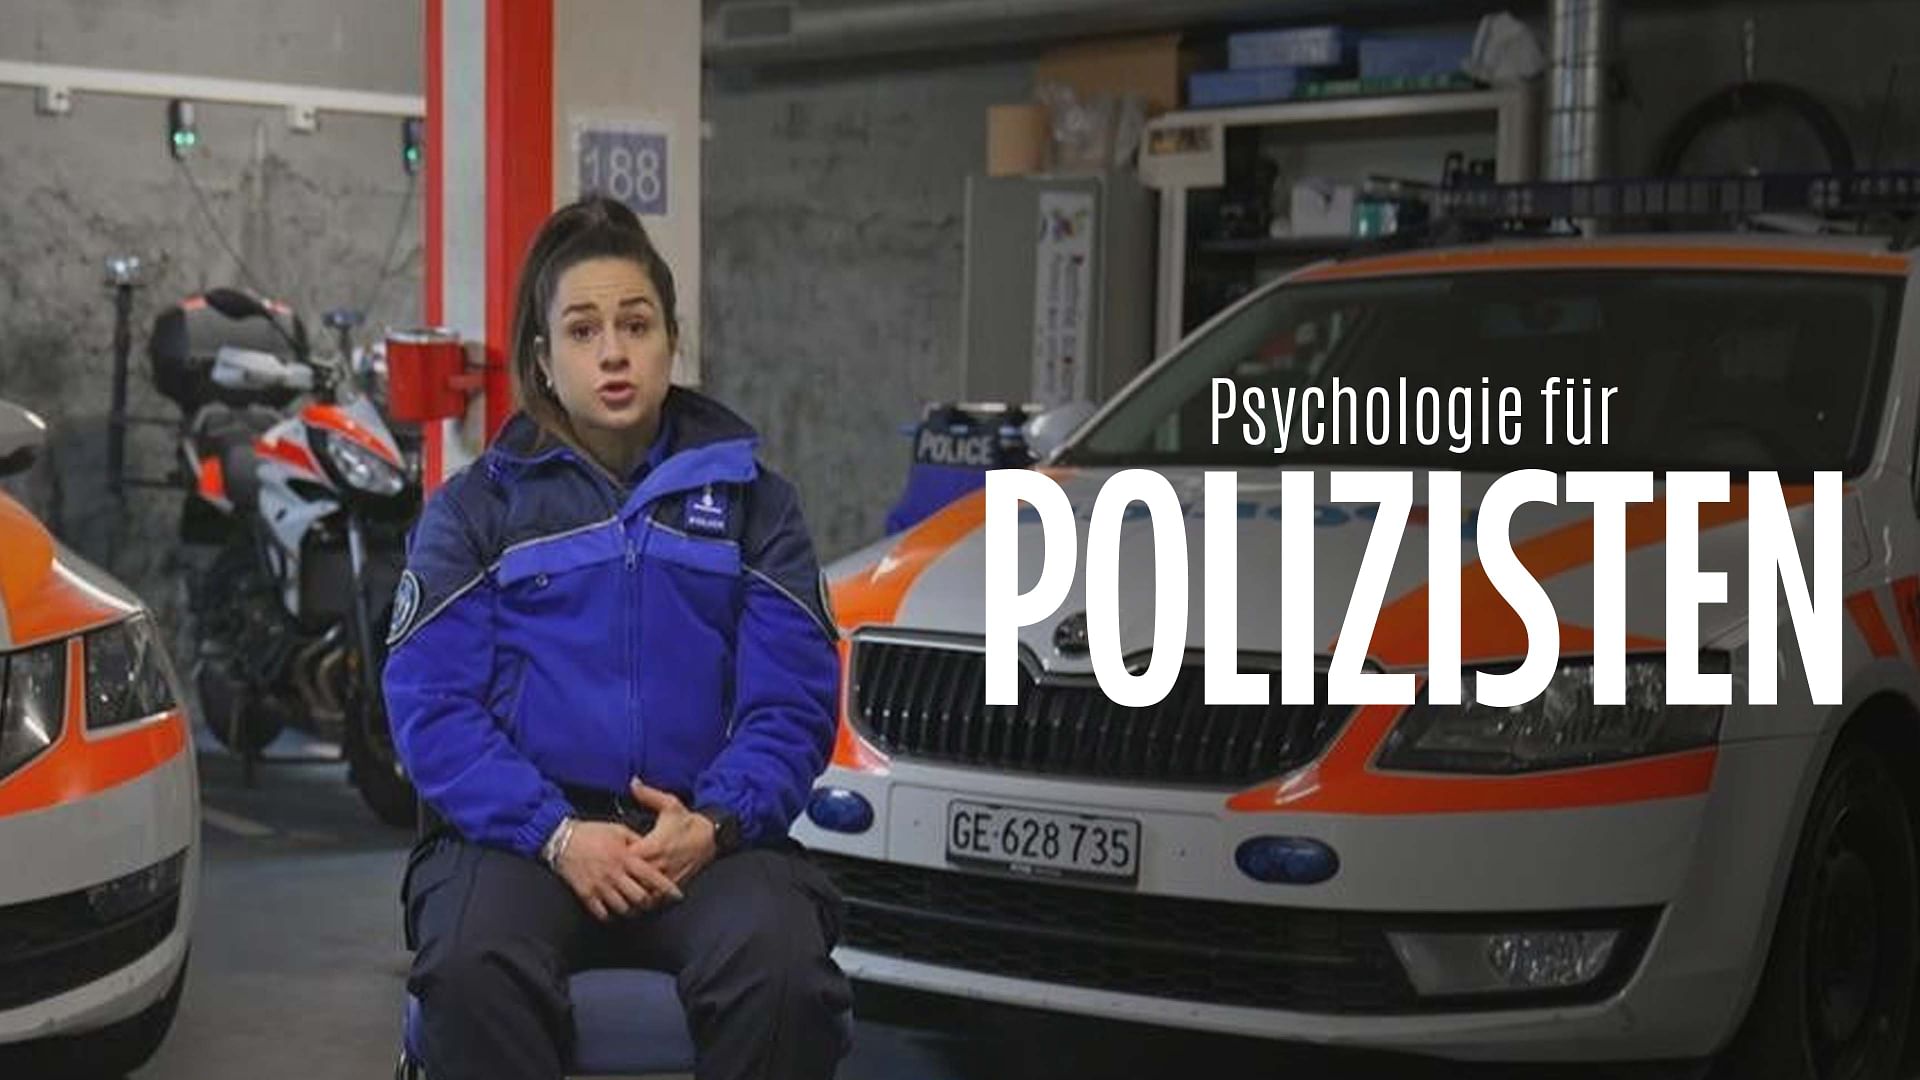 Re: Psychologie für Polizisten